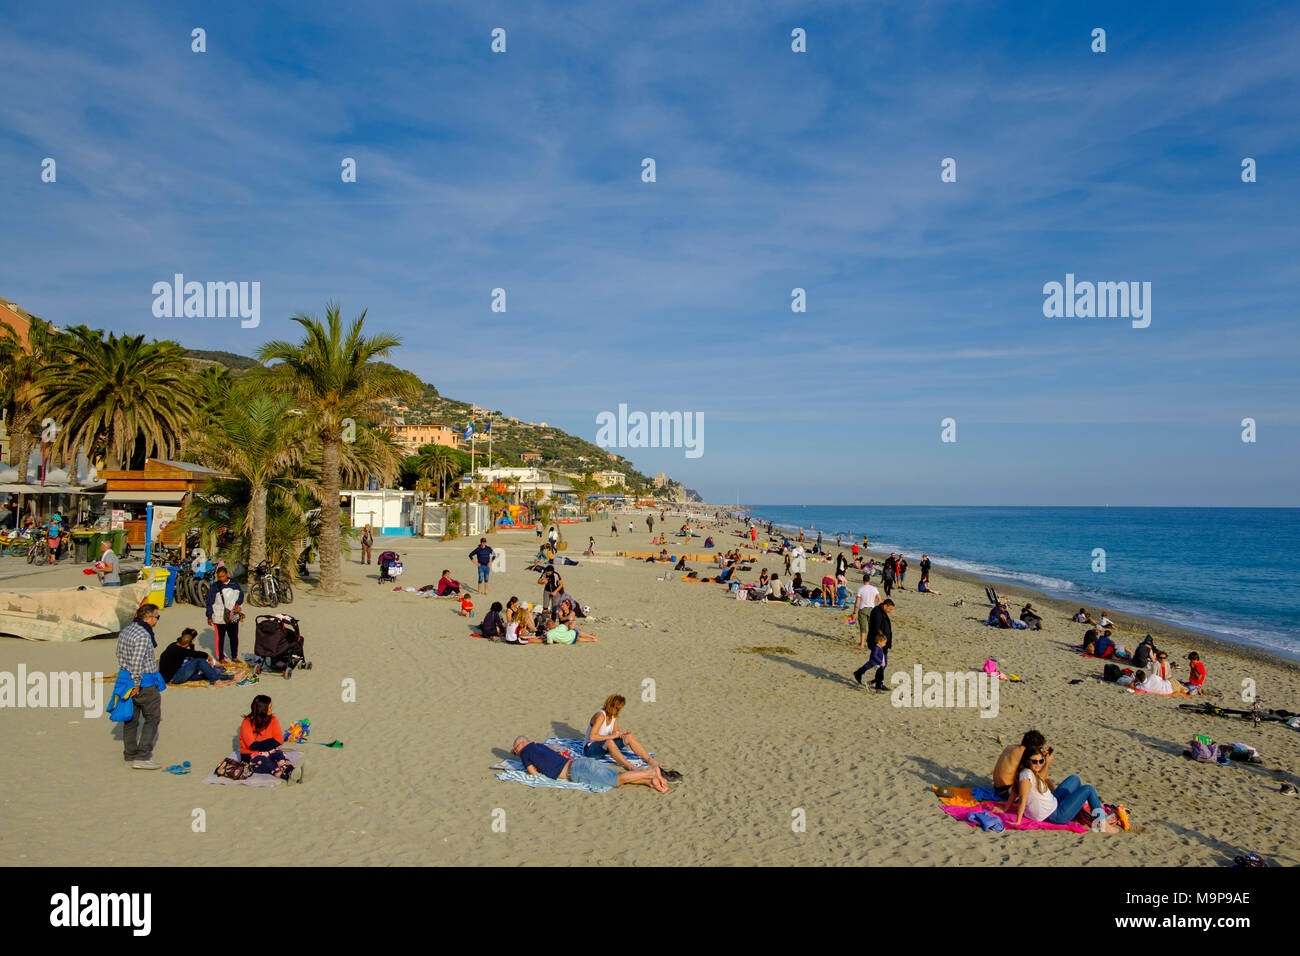 La gente sulla spiaggia, Finalmarina, Finale Ligure e la Riviera di Ponente, Liguria, Italia Foto Stock